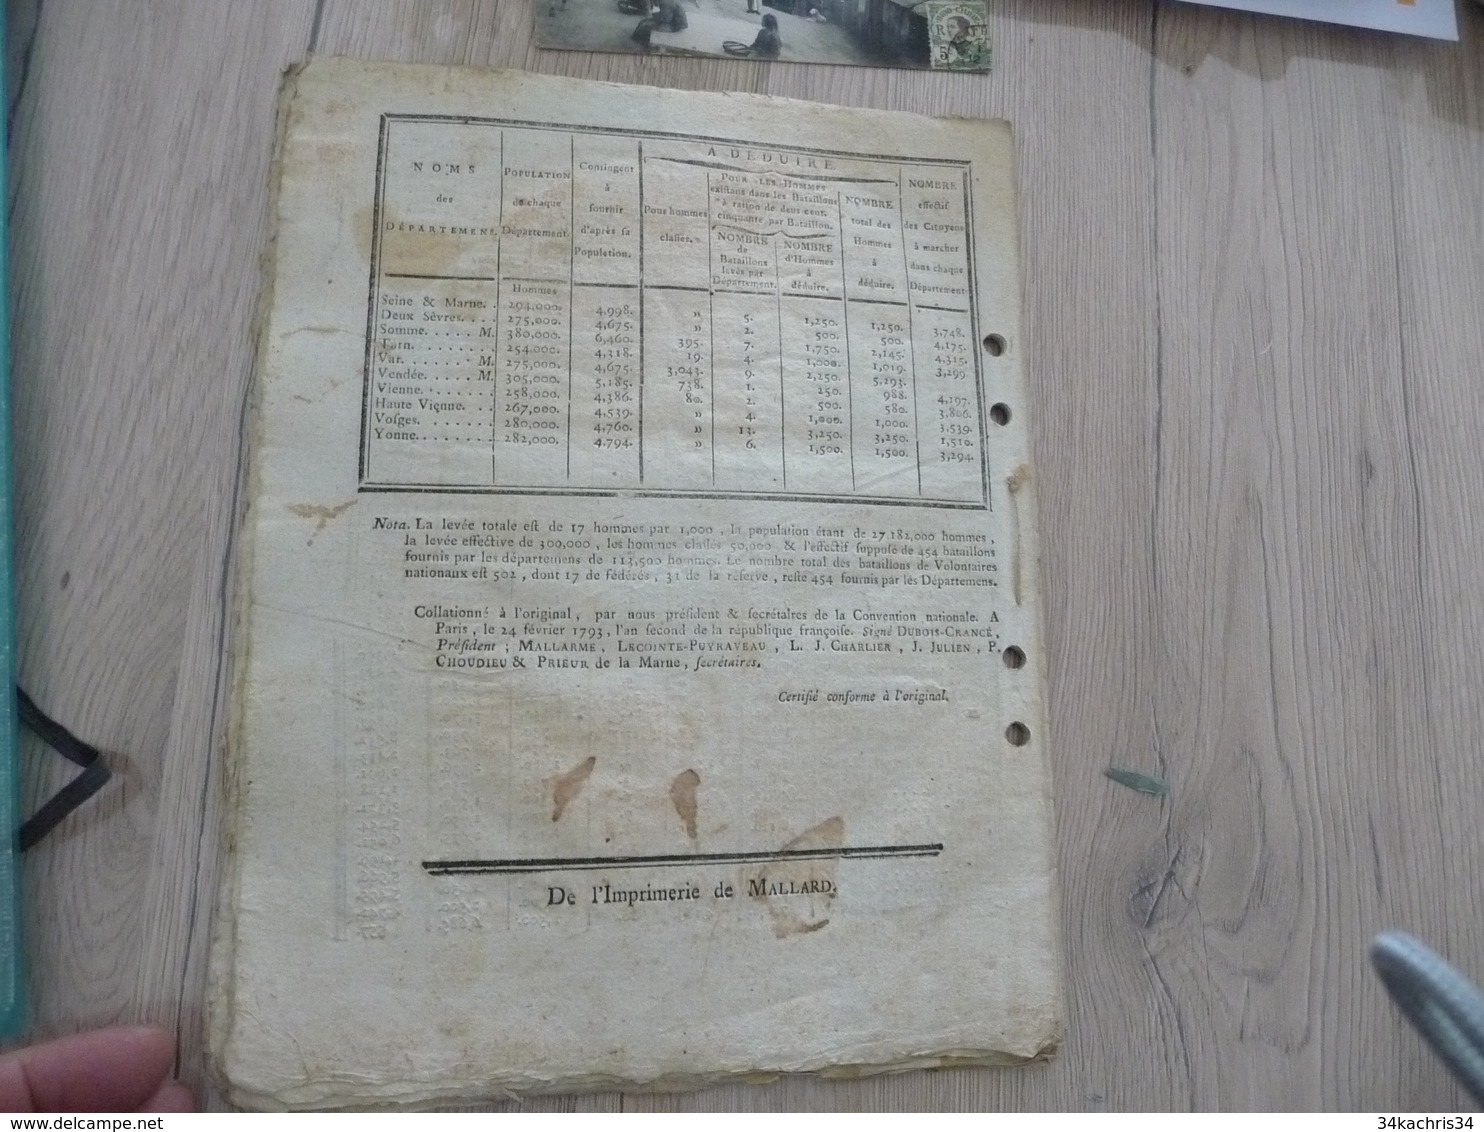 Décret Convention Nationale Février 1793 Armée organisation recrutement 32 pages trous d'archivage